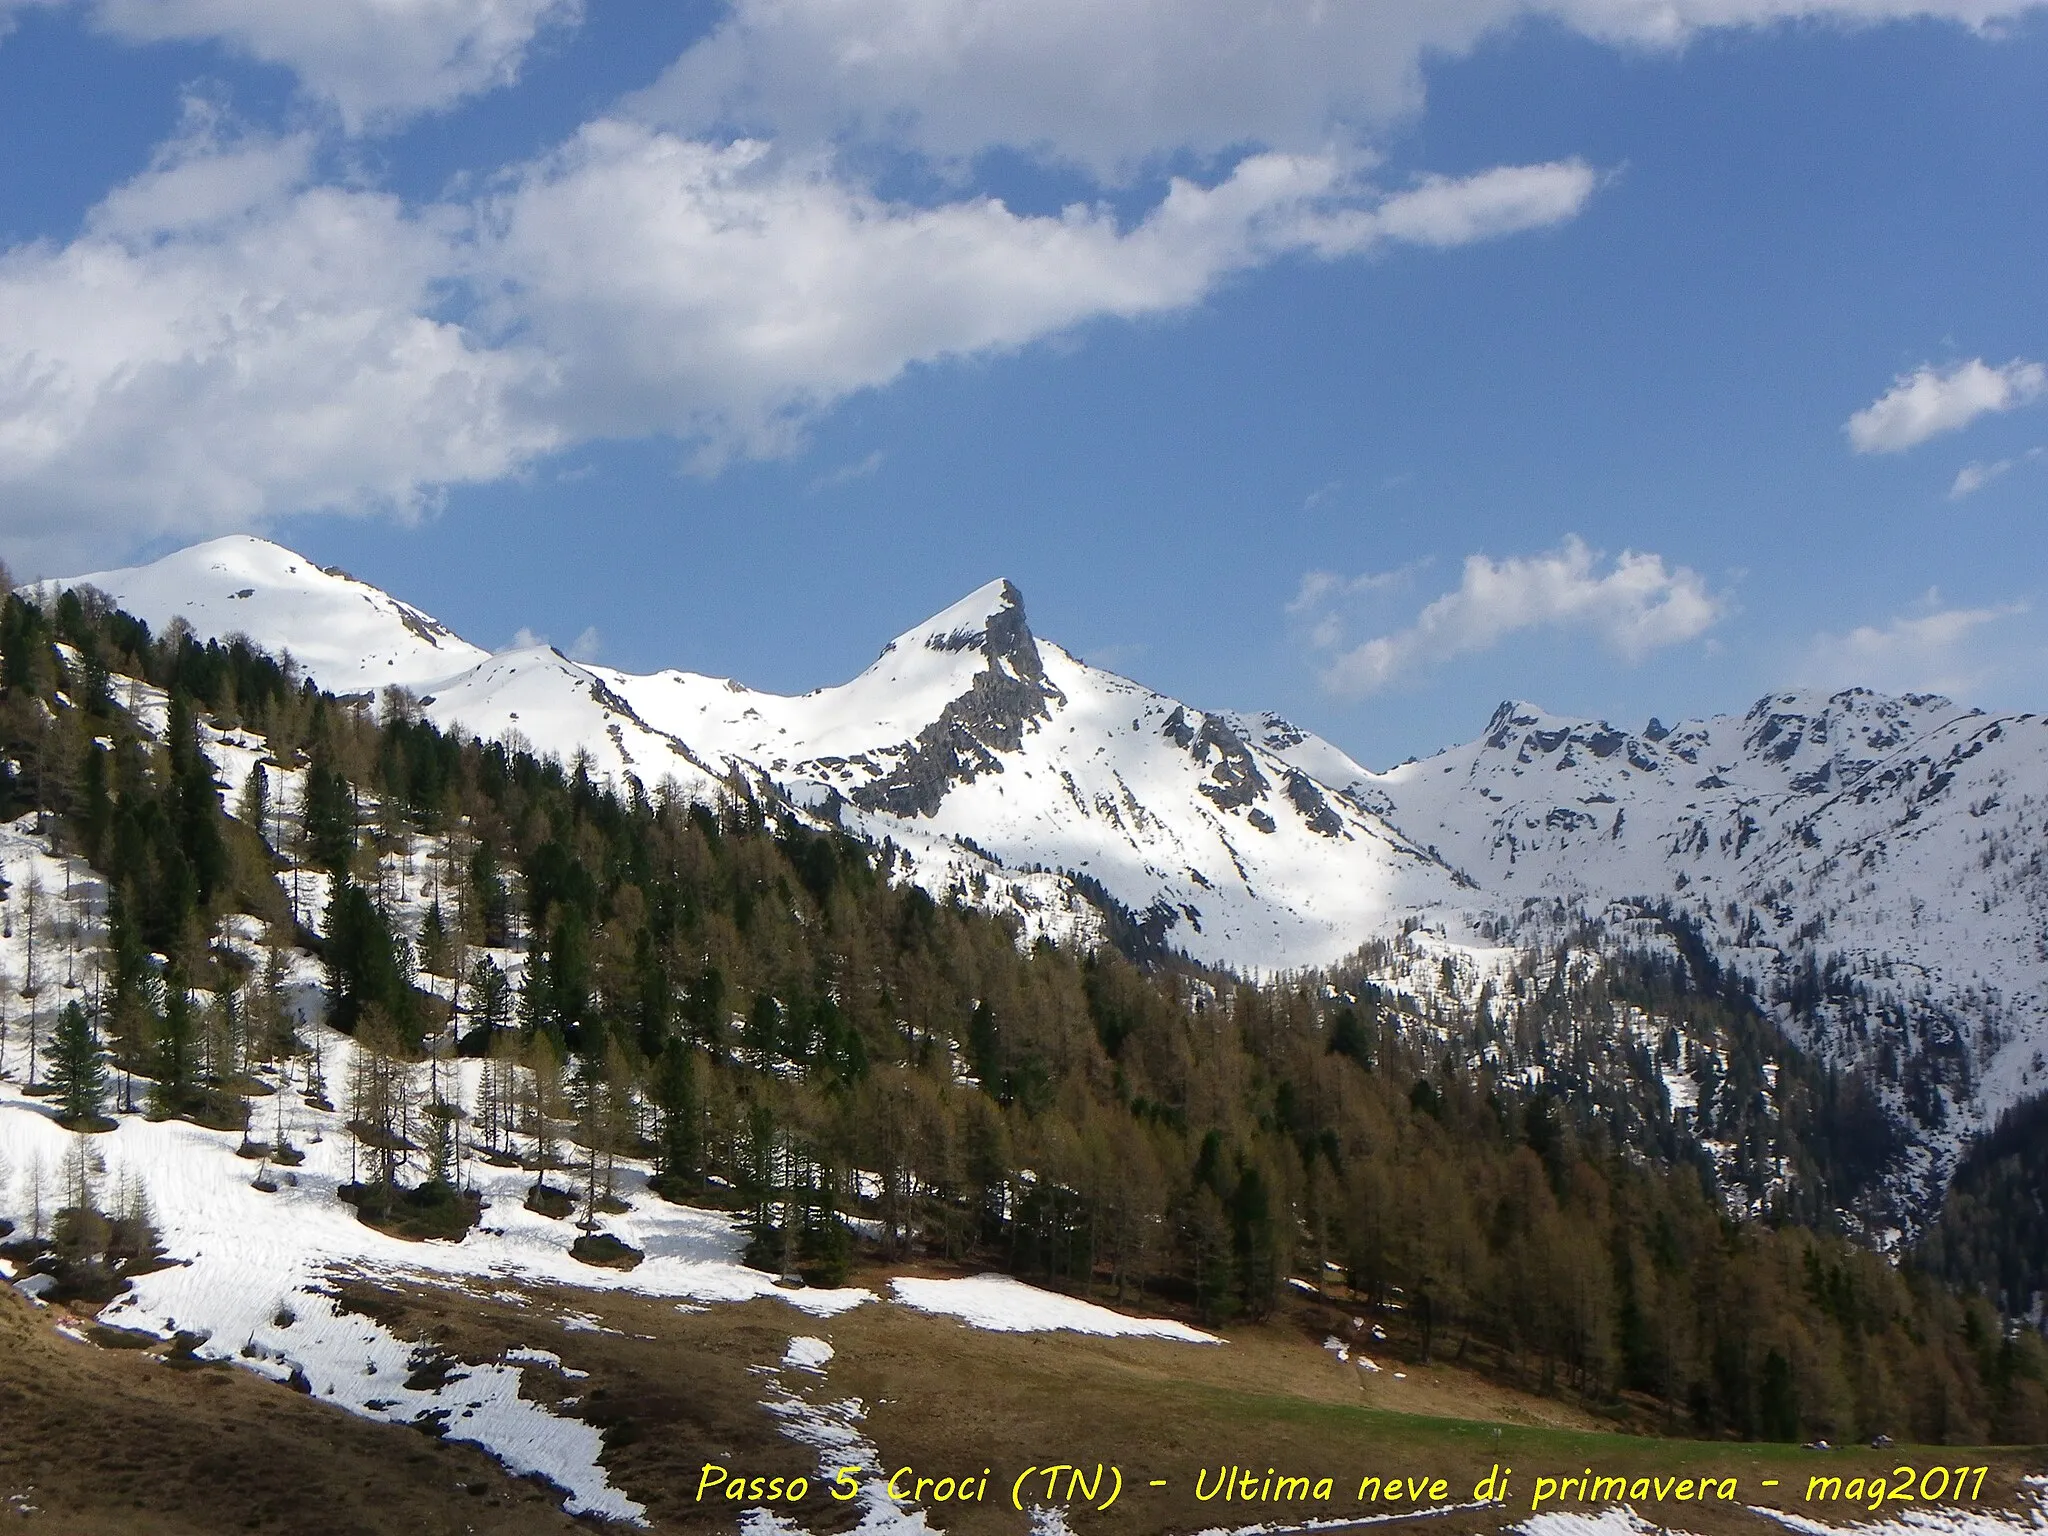 Photo showing: Ultima neve di primavera - mag2011